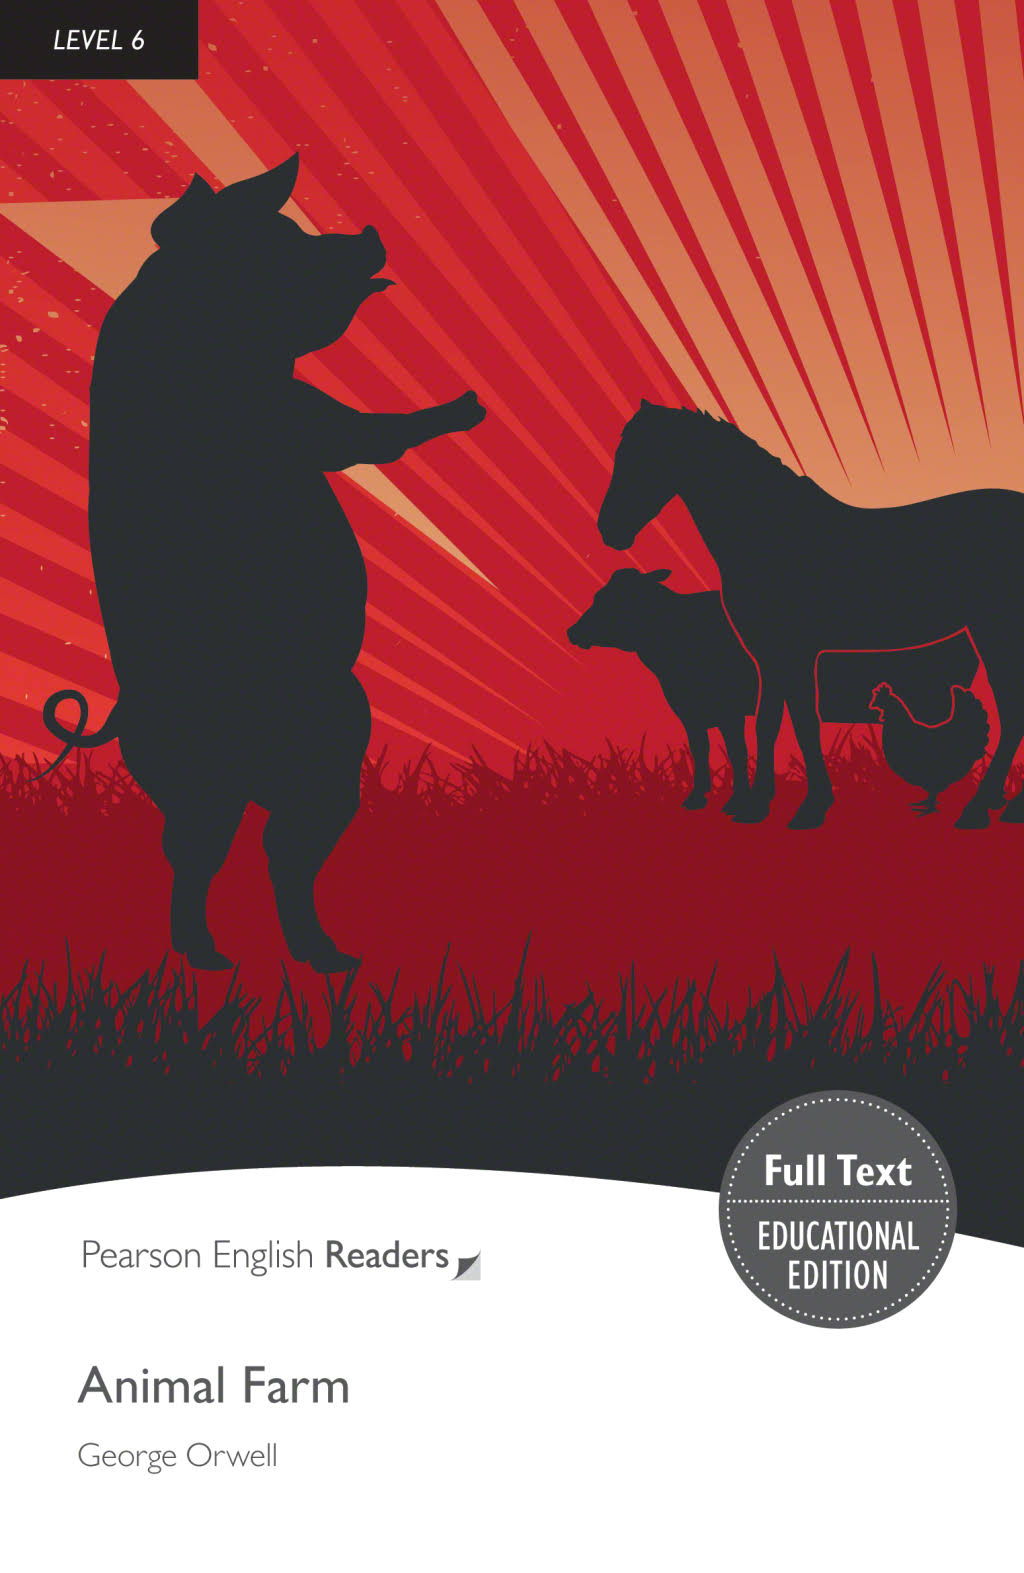 Level 6 Animal Farm by George Orwell